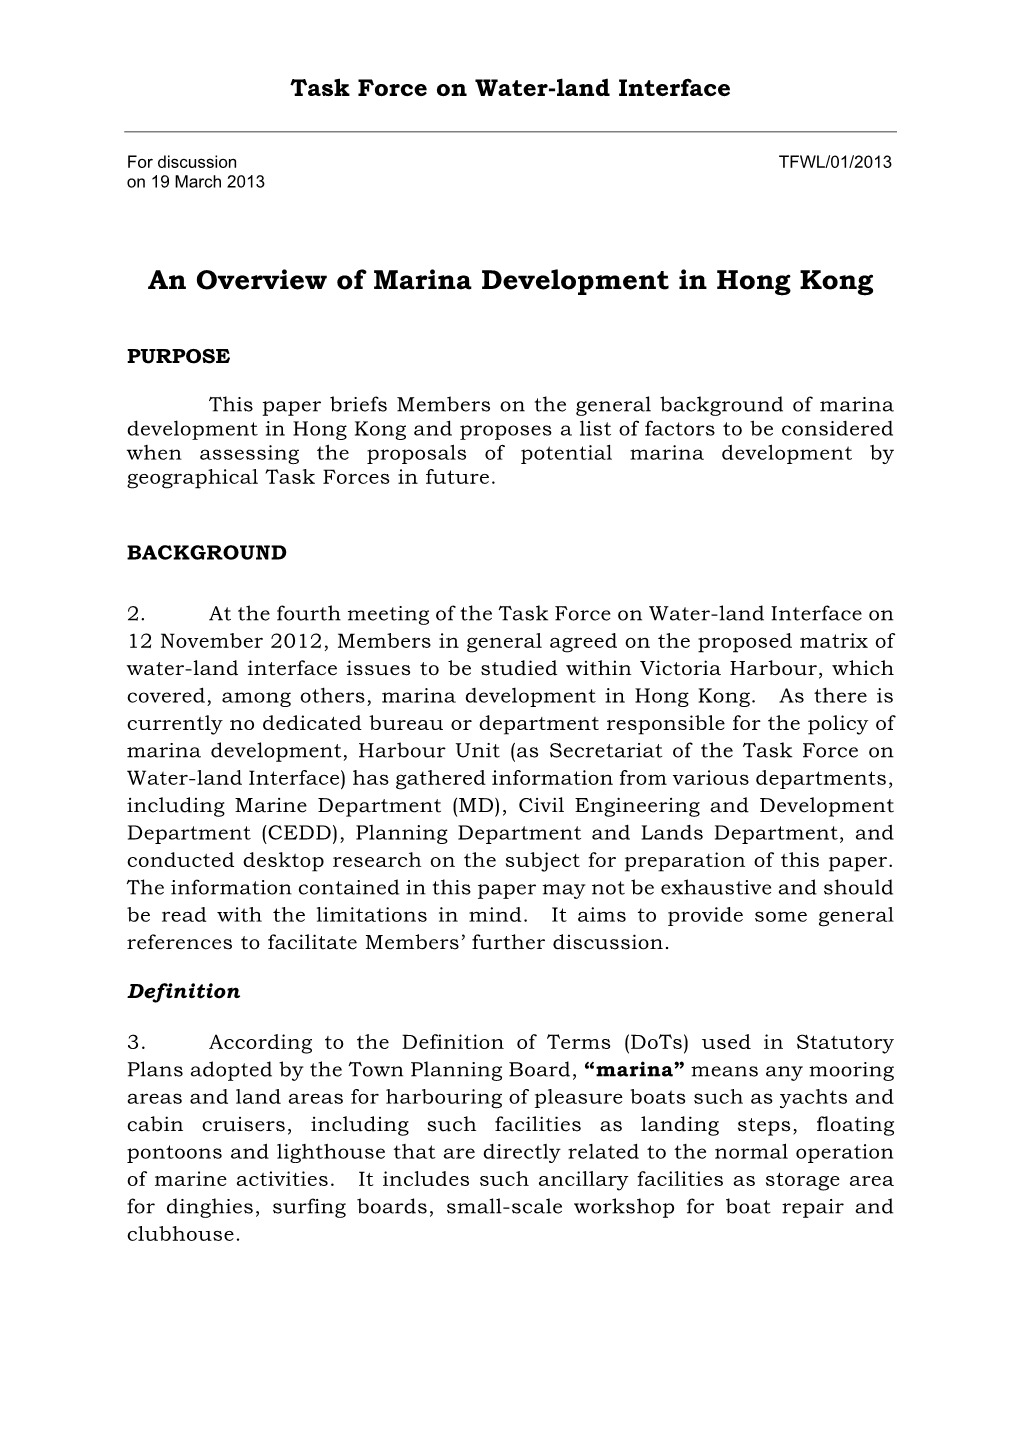 An Overview of Marina Development in Hong Kong